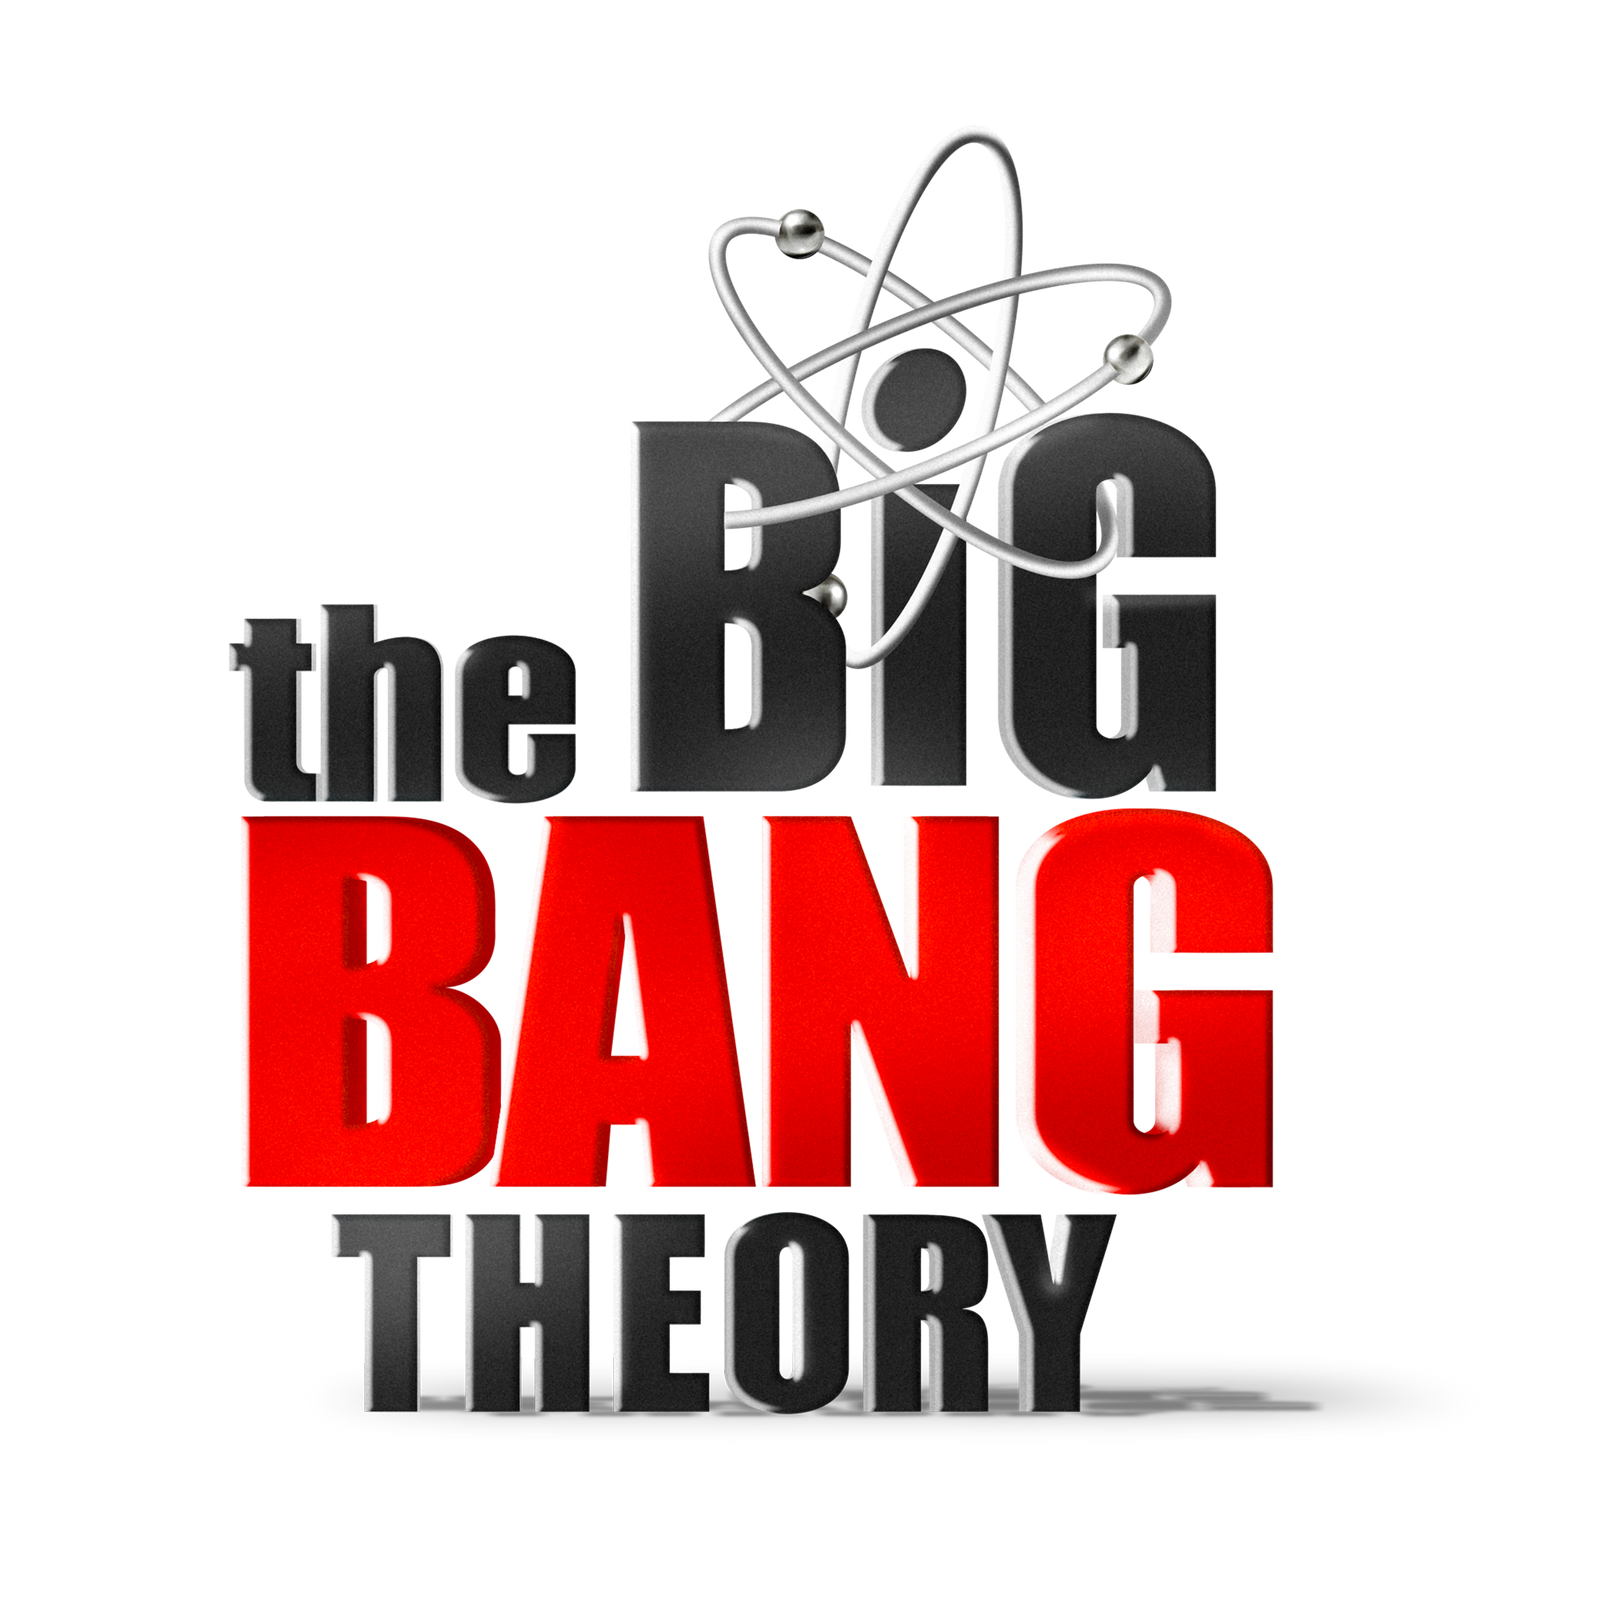 Big Bang Theory logo.